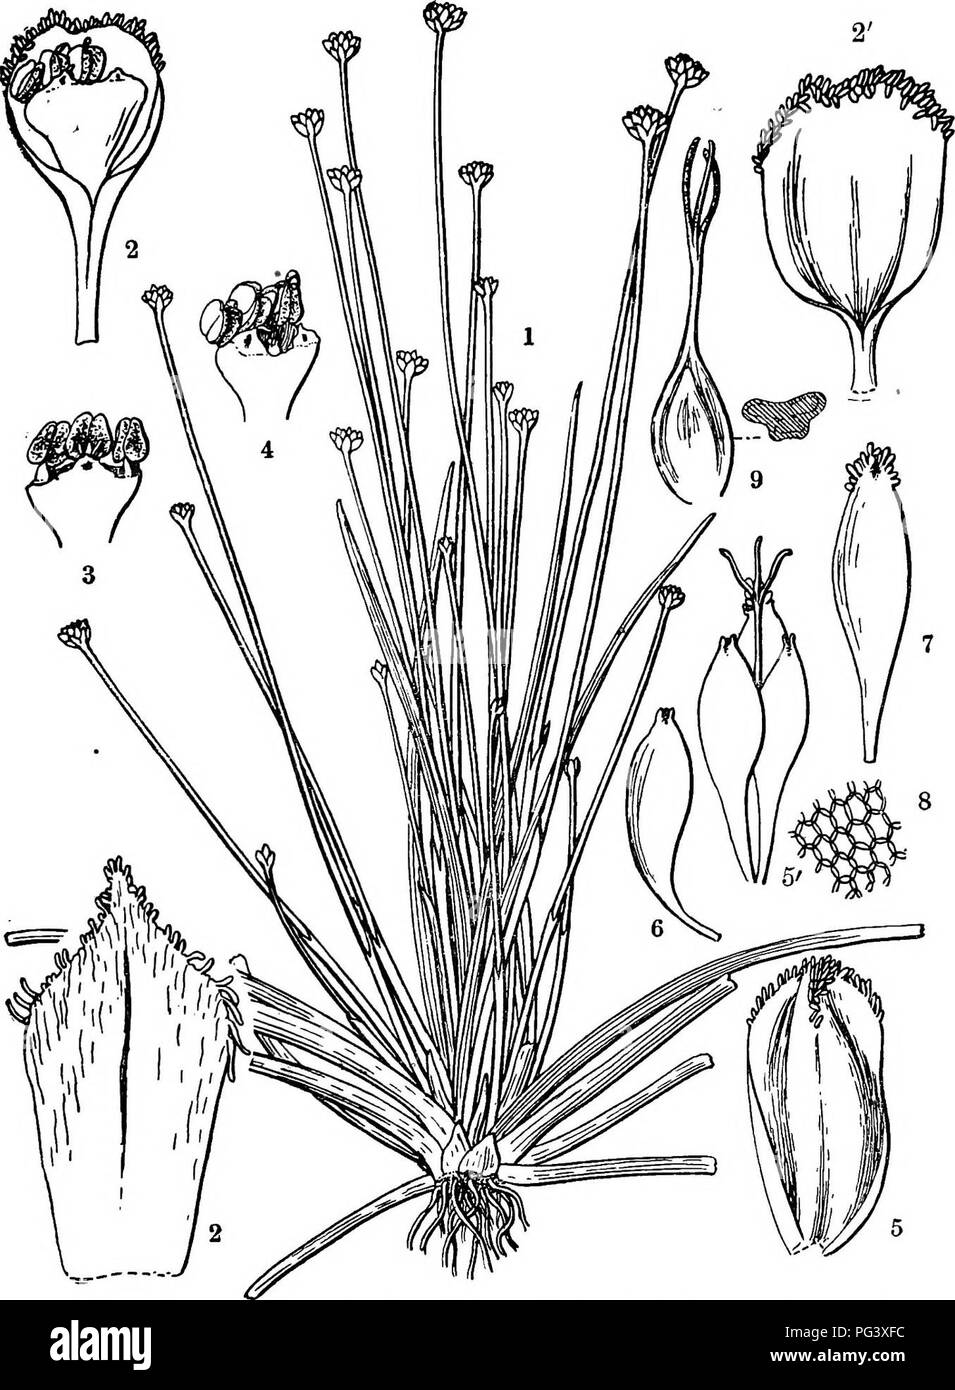 . Icones plantarum formosanarum non nec ad floram contributiones et formosanam ; ou, de l'Icones de Formosa, les plantes et les matériaux pour une flore de l'île, basé sur une étude de la collection de l'étude botanique du gouvernement de Formosa. La botanique. EEIOCAULE^. 53. Fig. 29, pachypet Jilvm Haxata'Eriocaulon ; 1, l'usine ; 2, une fleur mâle ; 2', un epathulate calice de la même fleur ; 3, portion apicale de un mâle corolle ; i, la même ; 5, une femelle, calys ; 5', une fleur femelle, calice ; 6 pétales, un pétale d'une autre, 7 ; 8, des groupes de cellules sur la surface de la même ; 9, de l'ovaire.. Veuillez noter t Banque D'Images